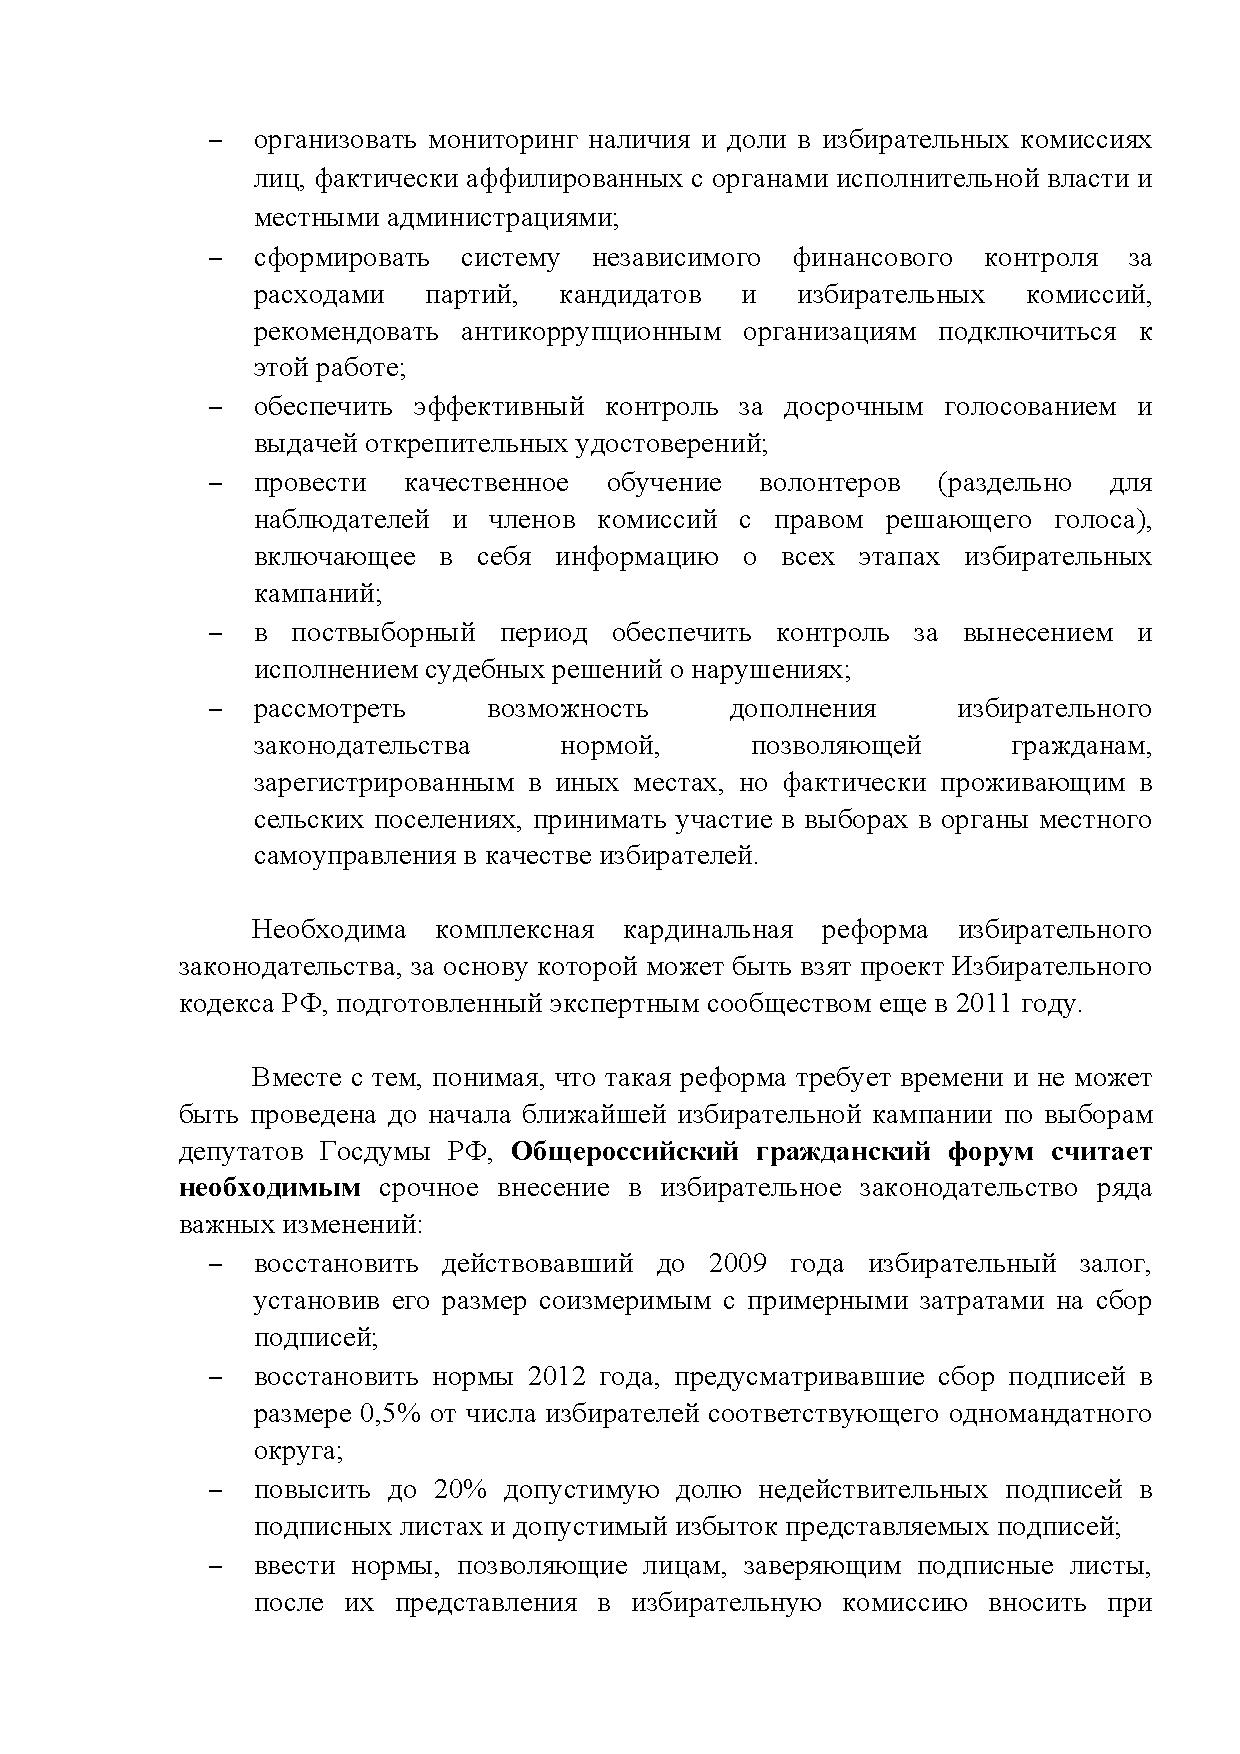  Опубликованы Предложения Общероссийского гражданского форума 2015 - фото 21